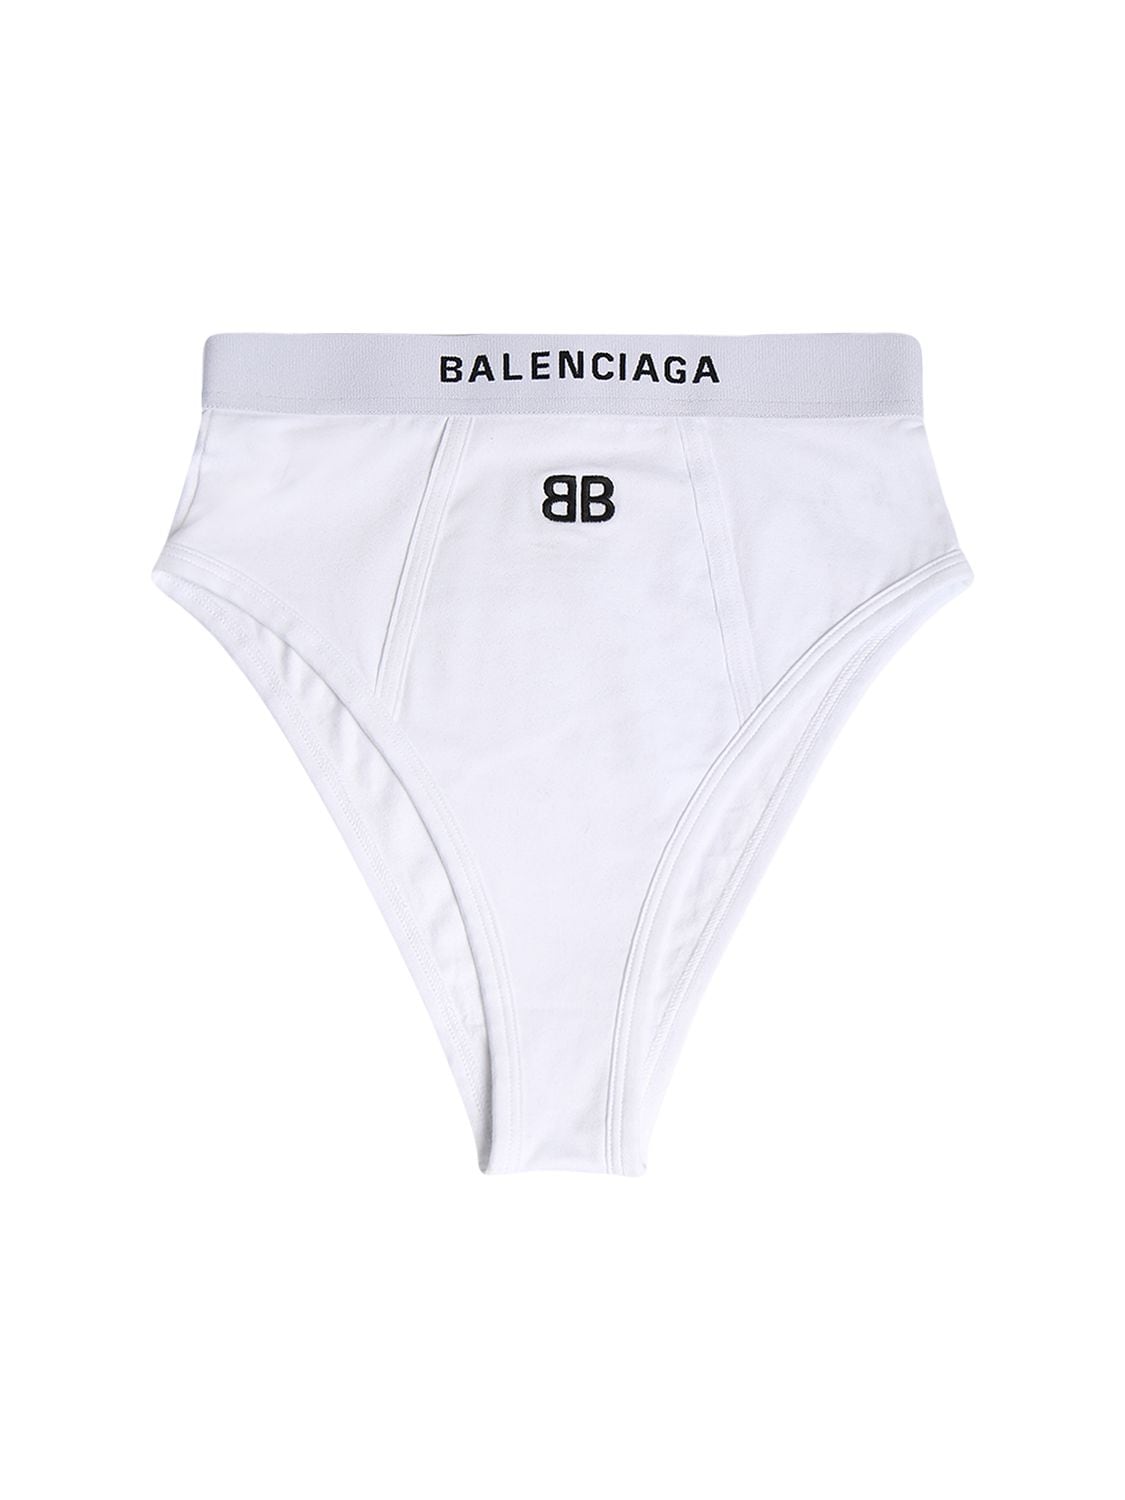 BALENCIAGA 棉质平纹针织运动内裤,74IIUU019-OTAWMA2